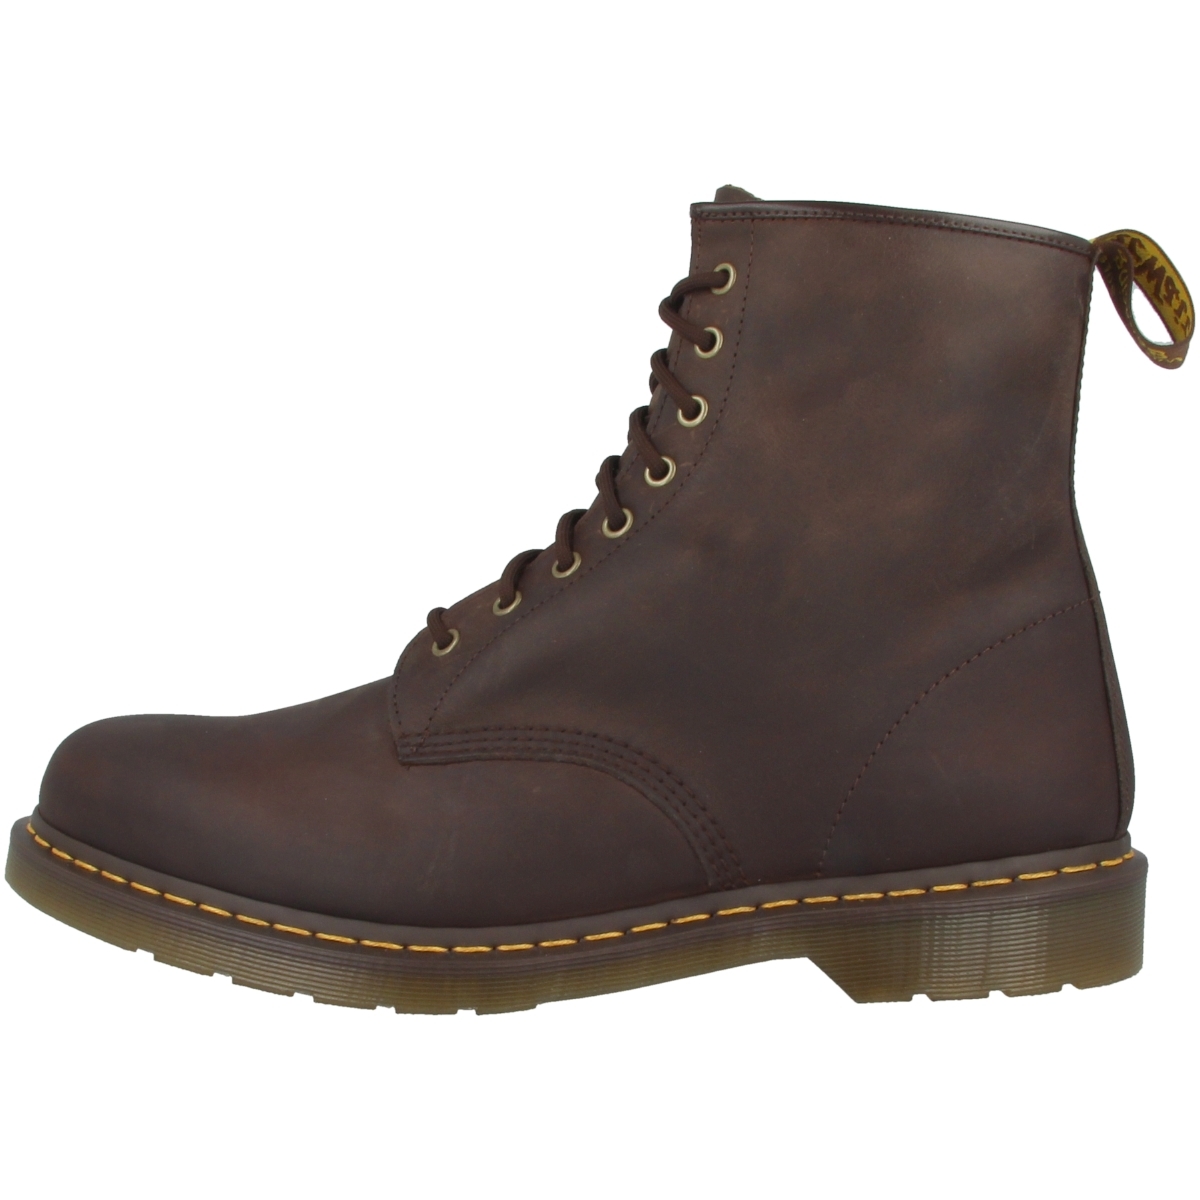 Dr Doc Martens 1460 Boots 8 Loch Leder Stiefel Schuhe Viele Farben Ebay